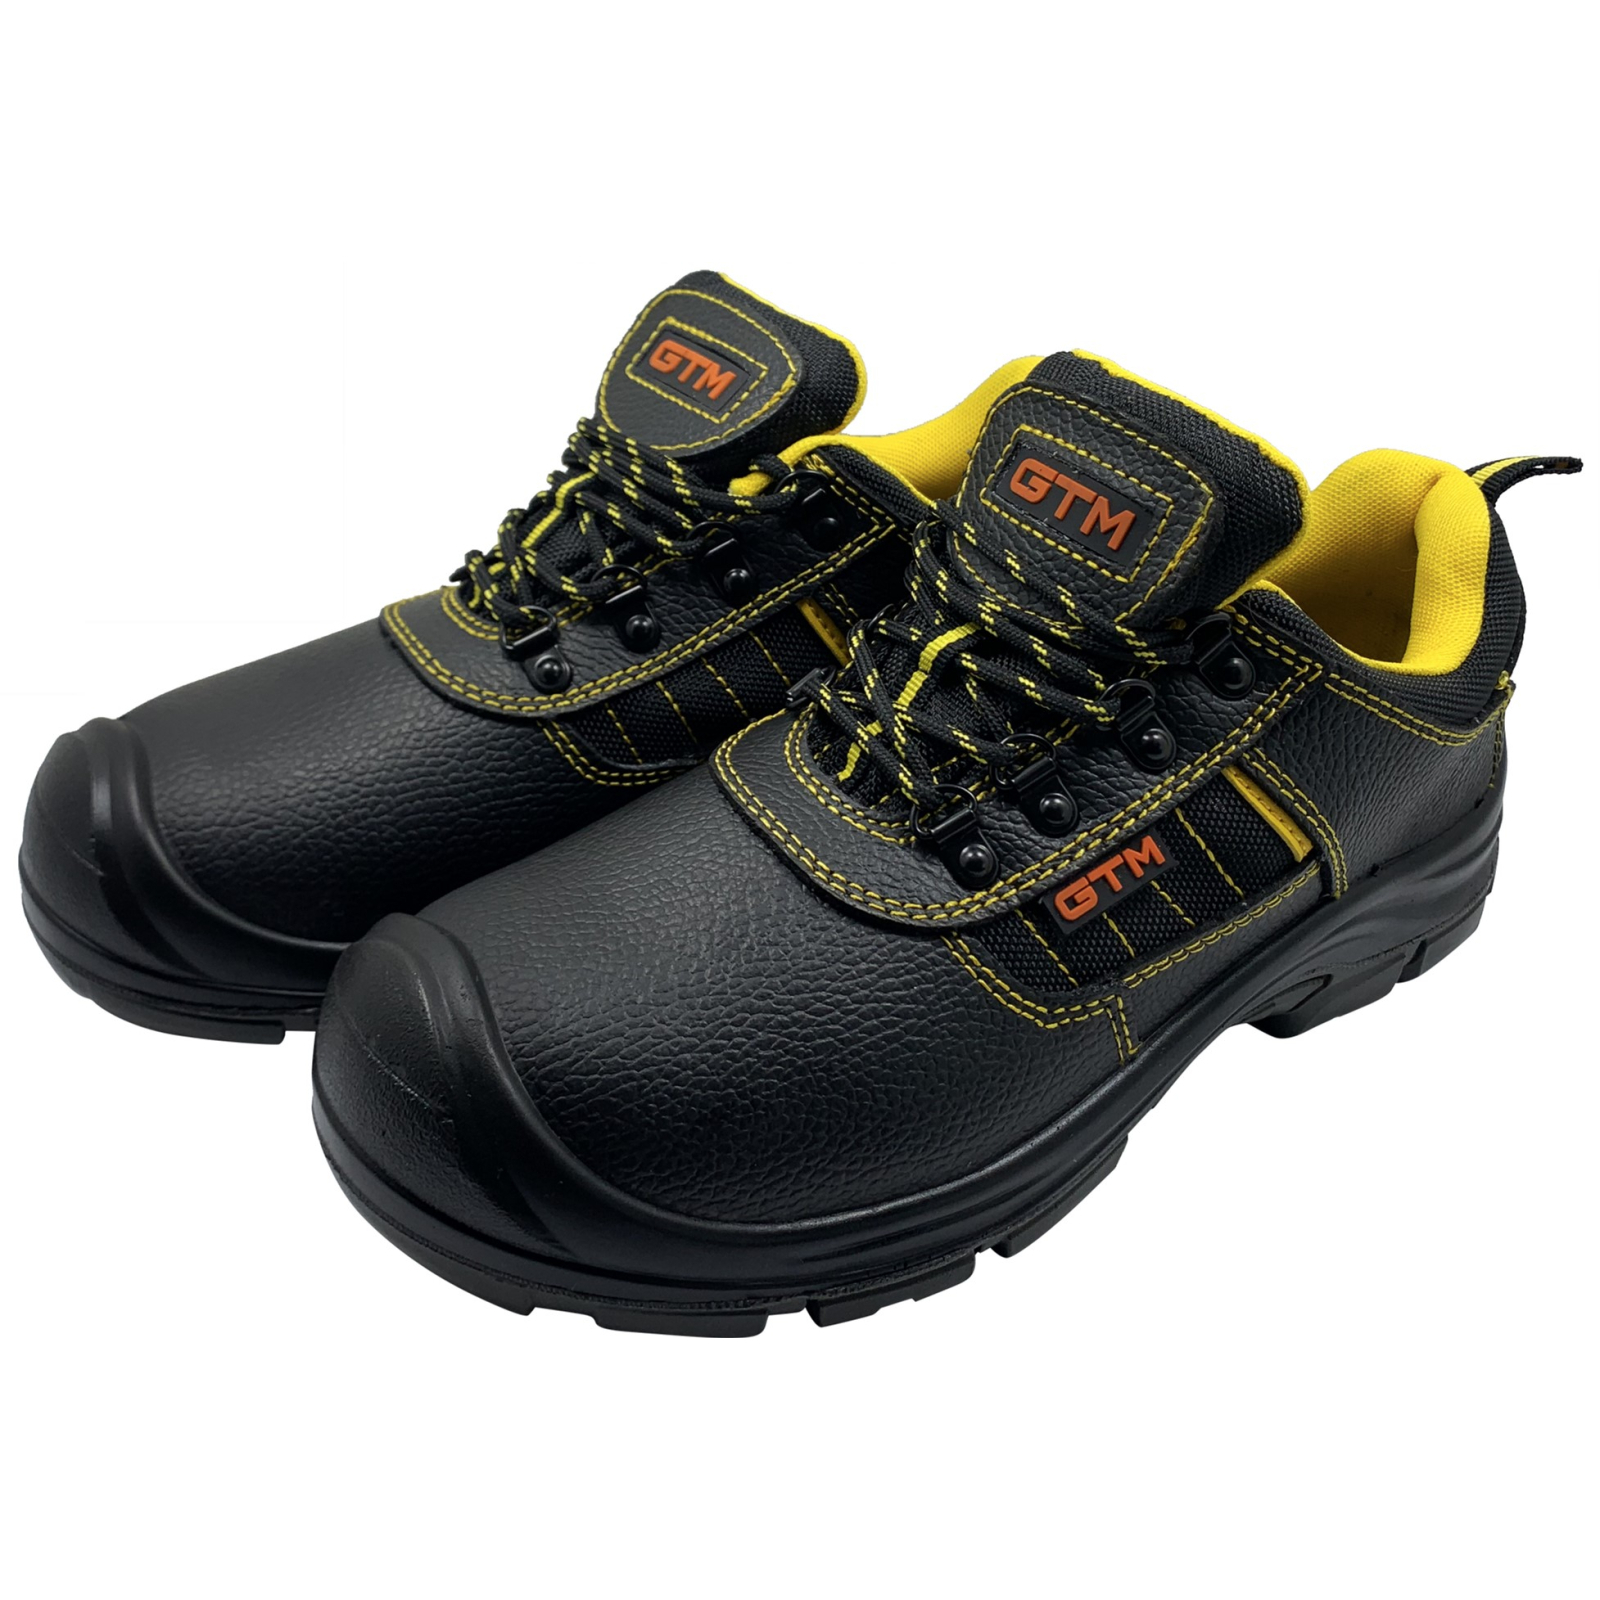 Ботинки рабочие GTM SM-078 мет. носок, р.42 с желтыми вставками (SM-078-42) изображение 3